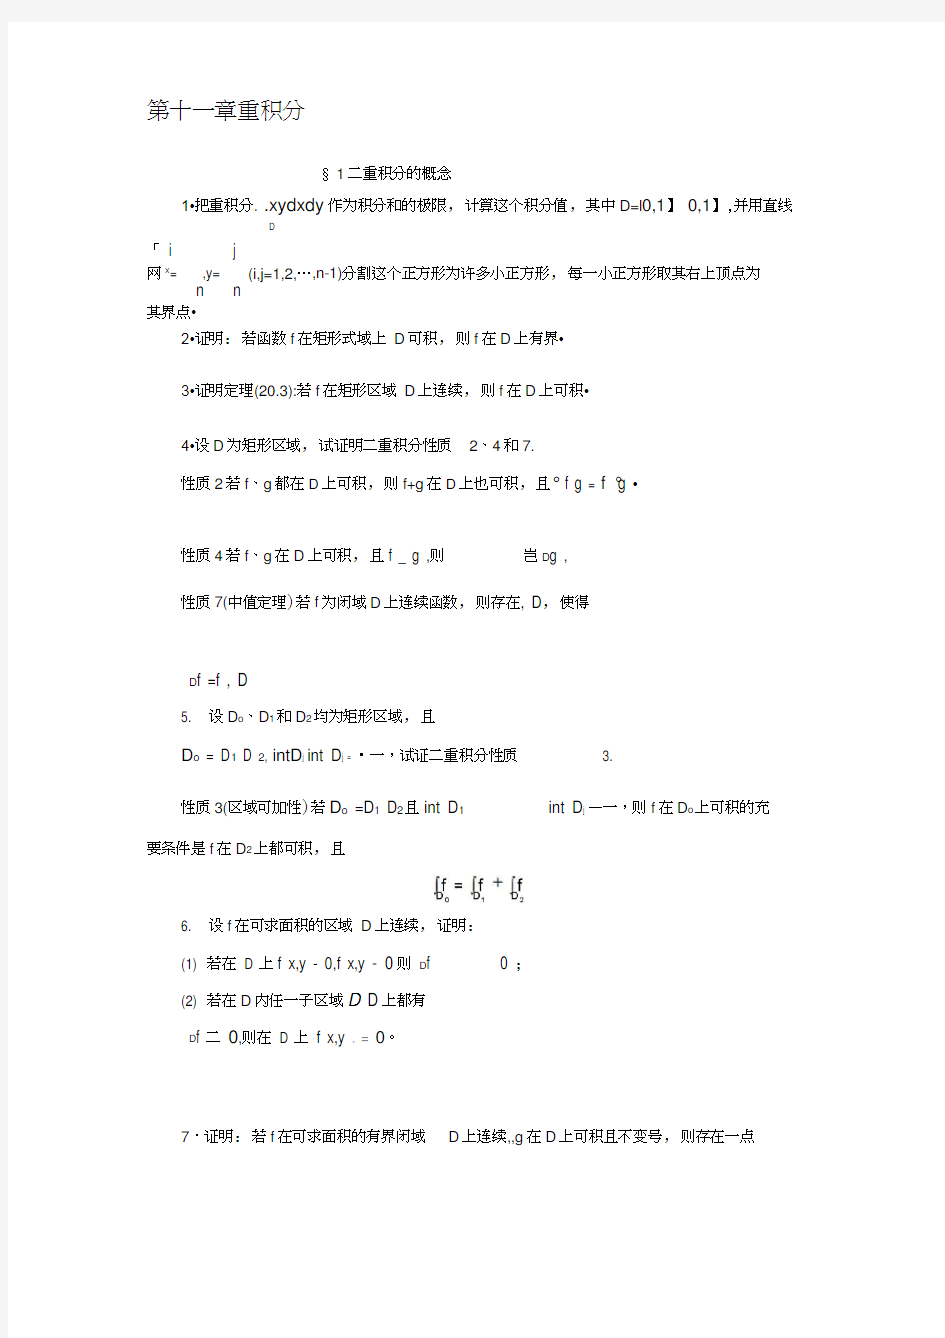 数学分析课本(华师大三版)-习题及答案第二十一章(20200511214824)